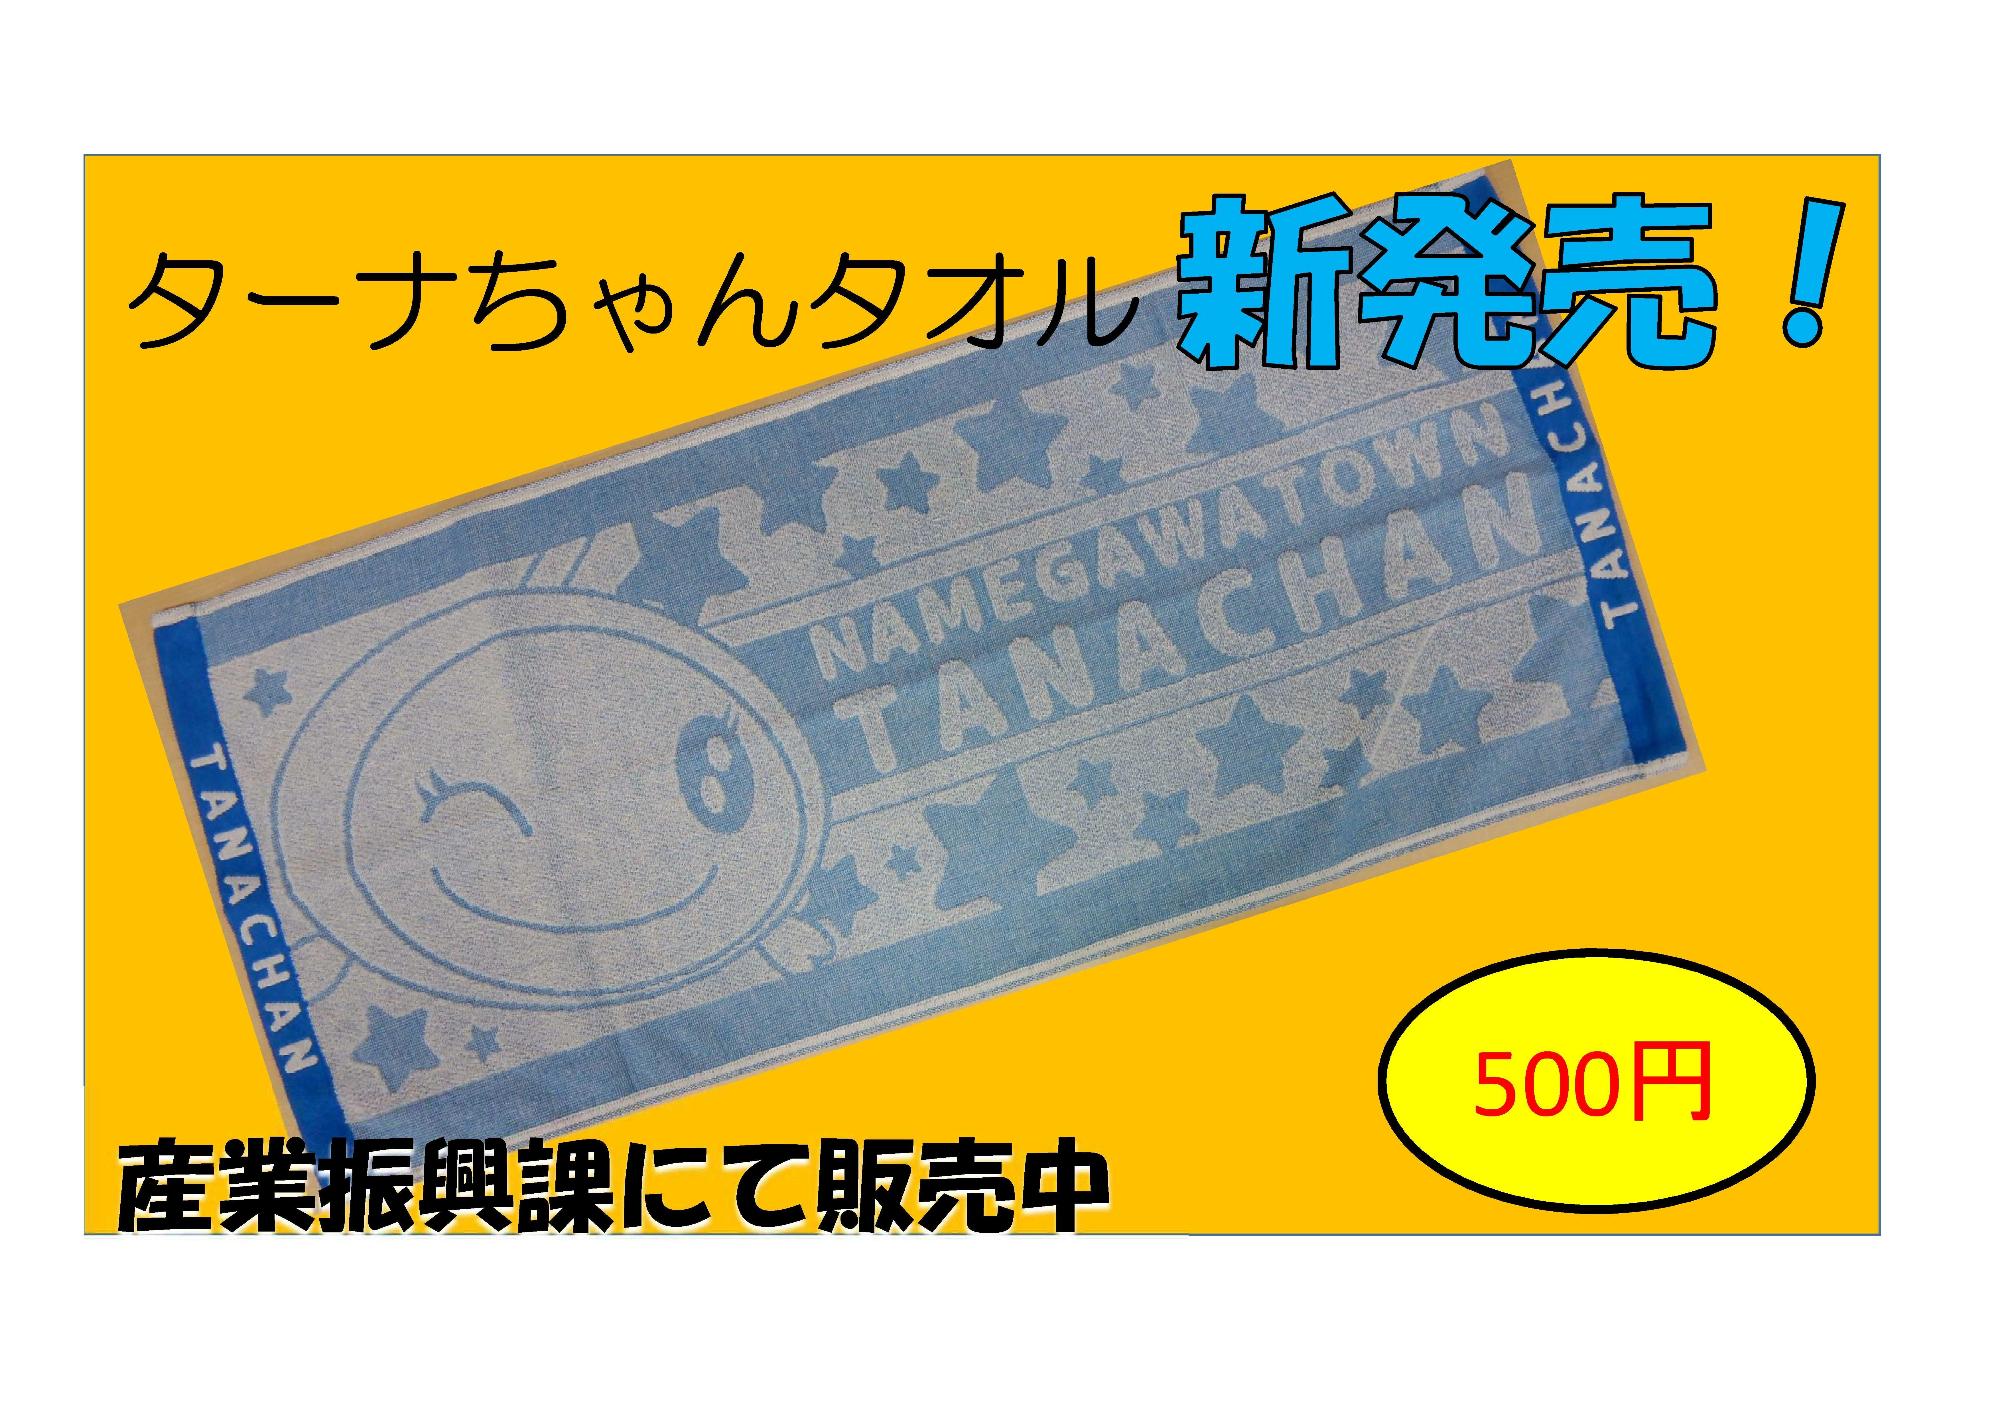 ウインクしているターナちゃんの大きな刺繍が施されているターナちゃんタオルの商品紹介写真